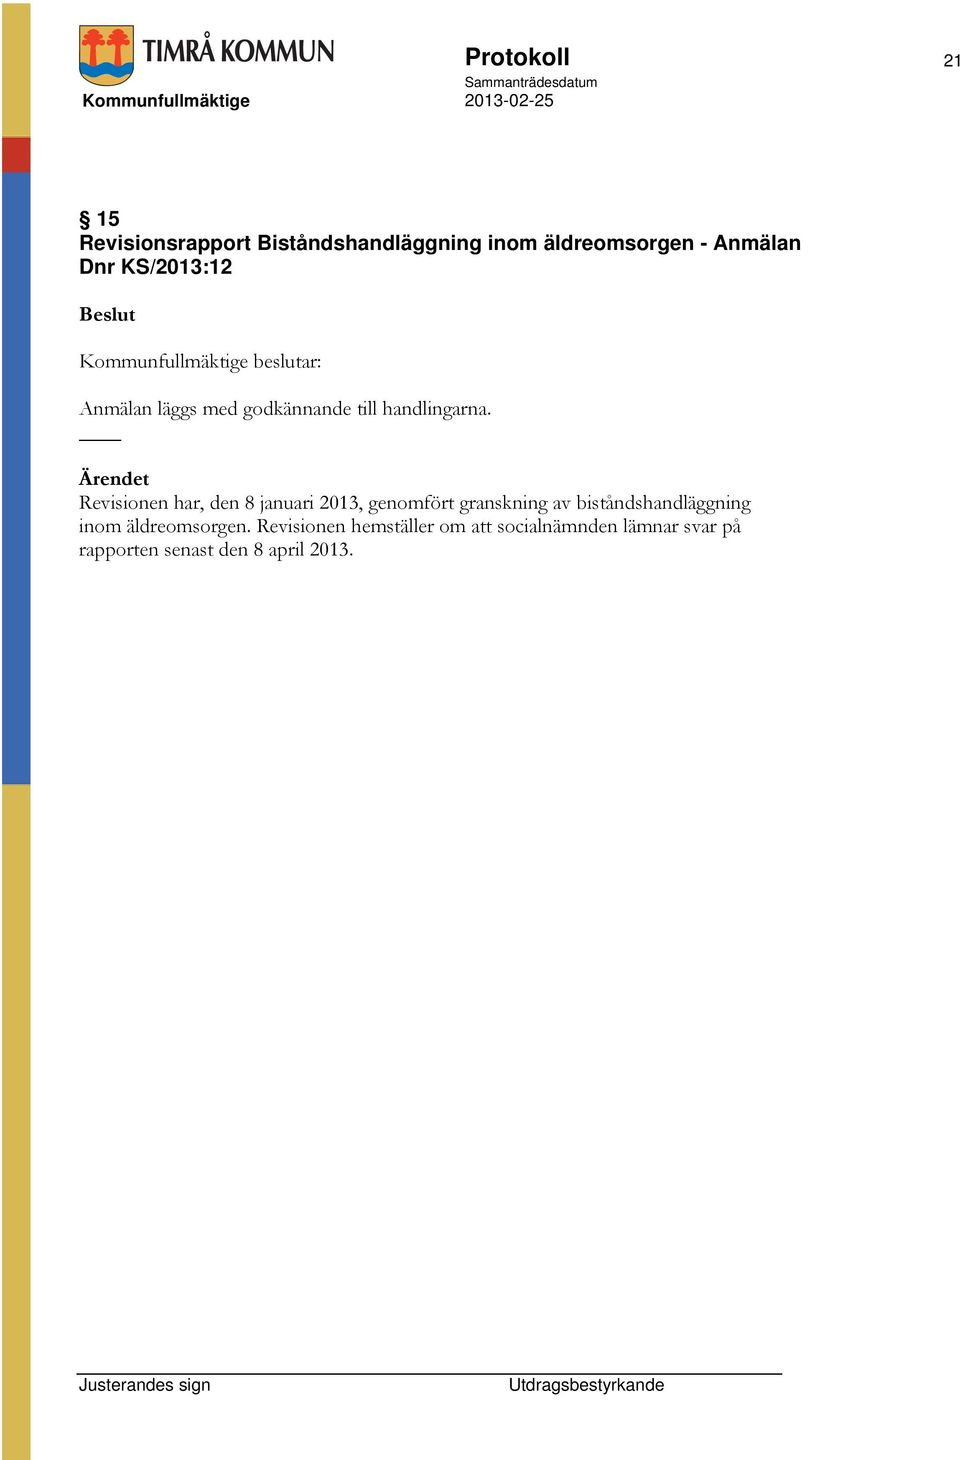 Revisionen har, den 8 januari 2013, genomfört granskning av biståndshandläggning